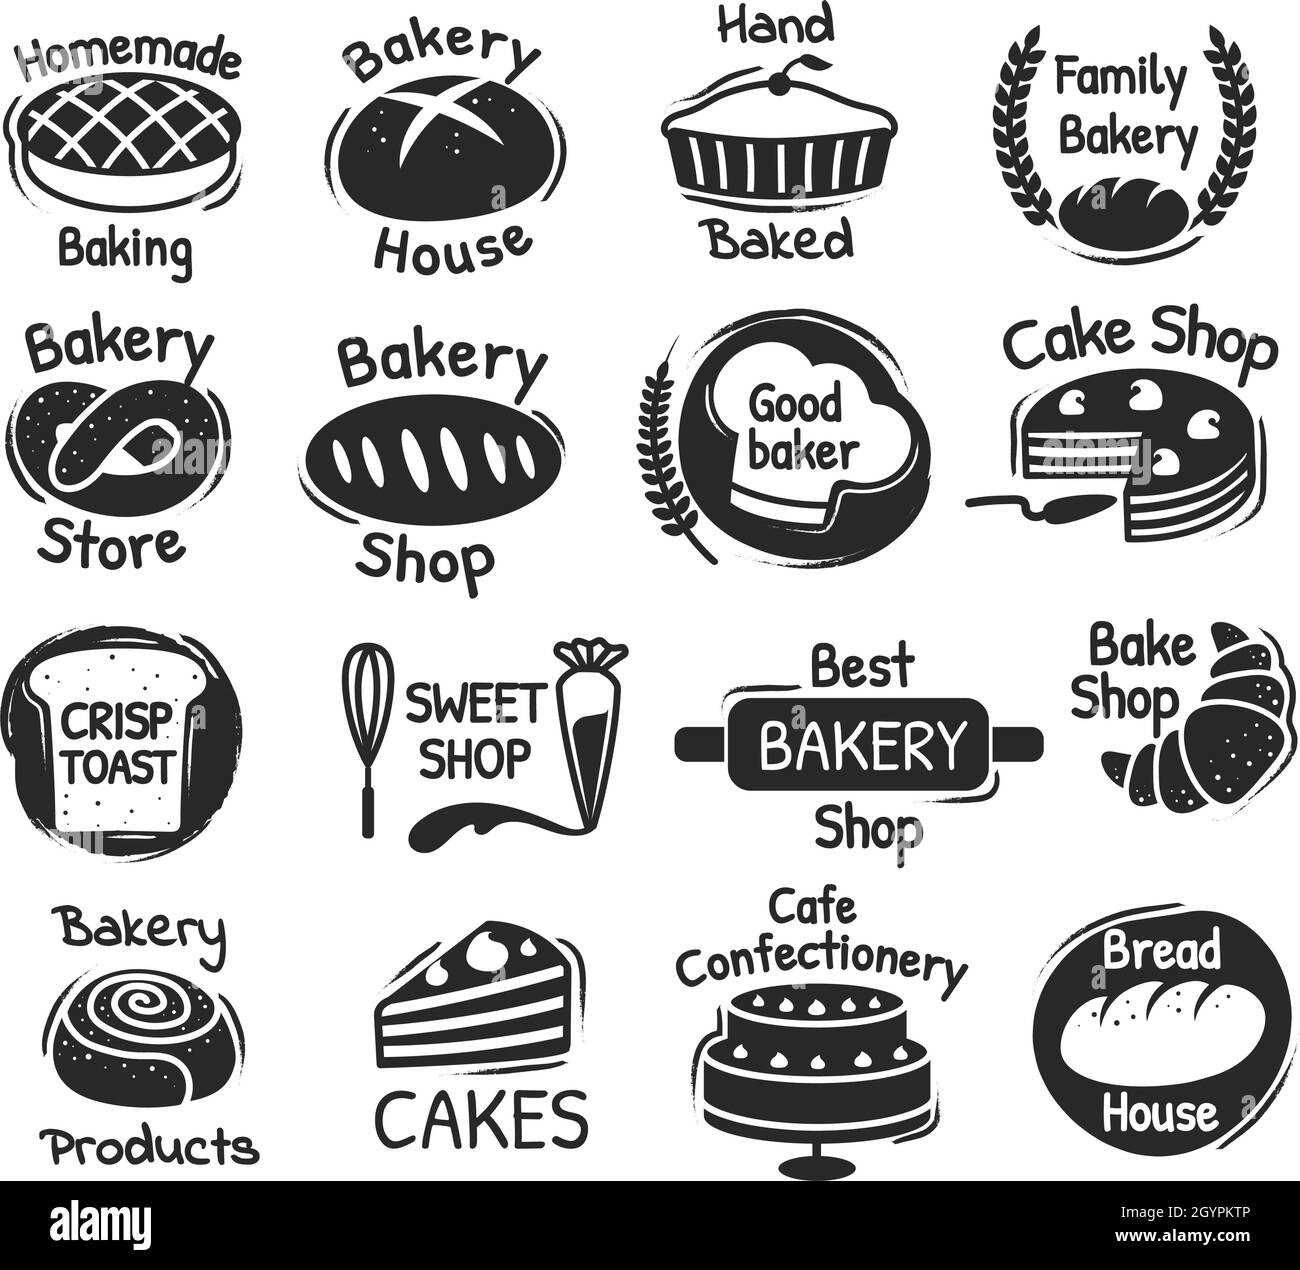 Logo für Bäckereihandschriften, Etiketten für Süßwaren und Desserts. Köstliche handgemachte Gebäck, Backprodukte Verpackung Stempel Design Vektor-Set. Logo der besten Bäckerei und des Süßwarenladens Stock Vektor